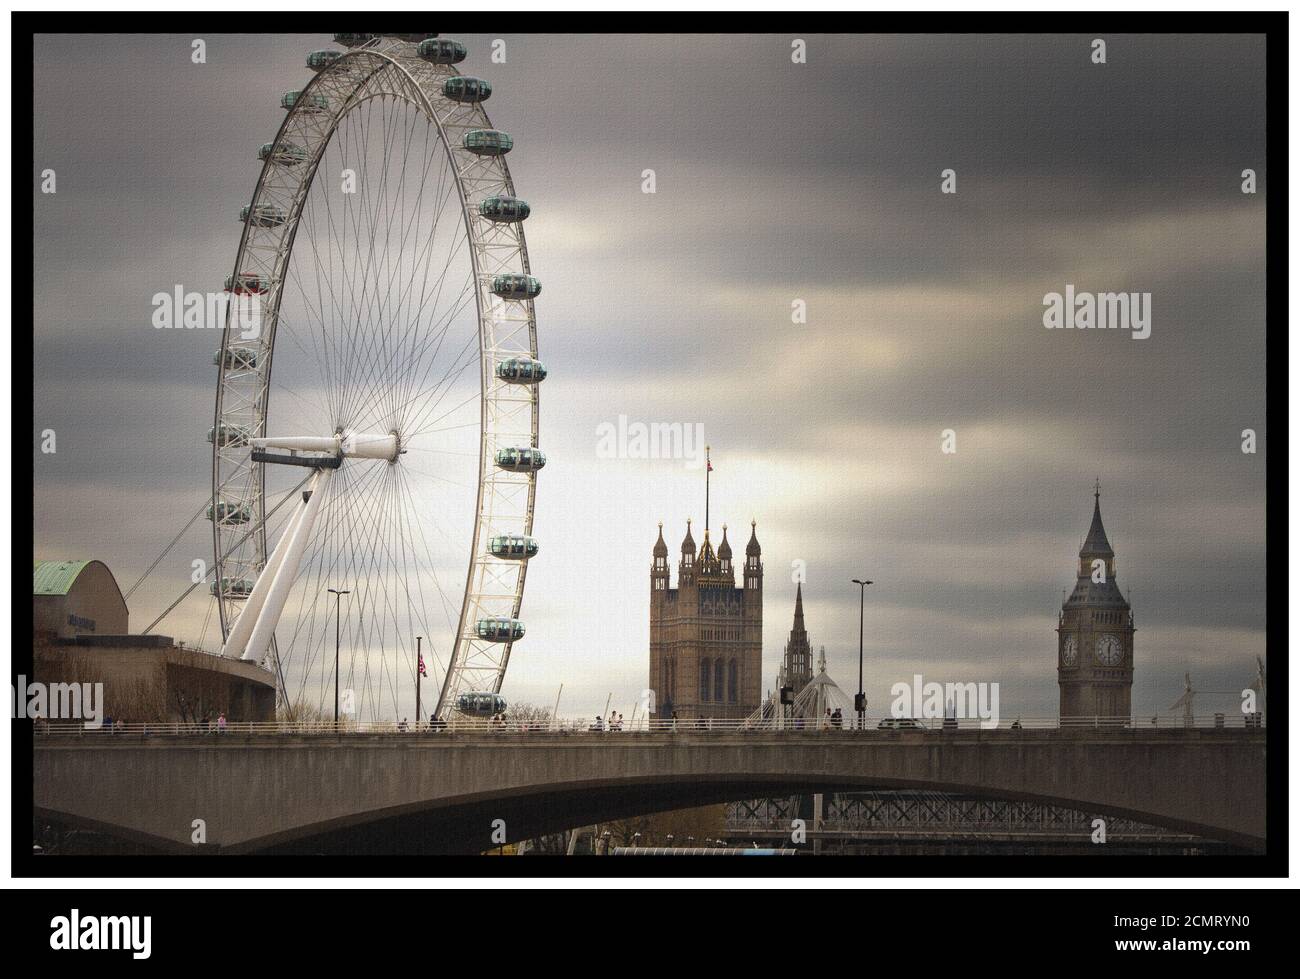 Vue sur le paysage du London Eye et du Parlement un ciel sombre Banque D'Images